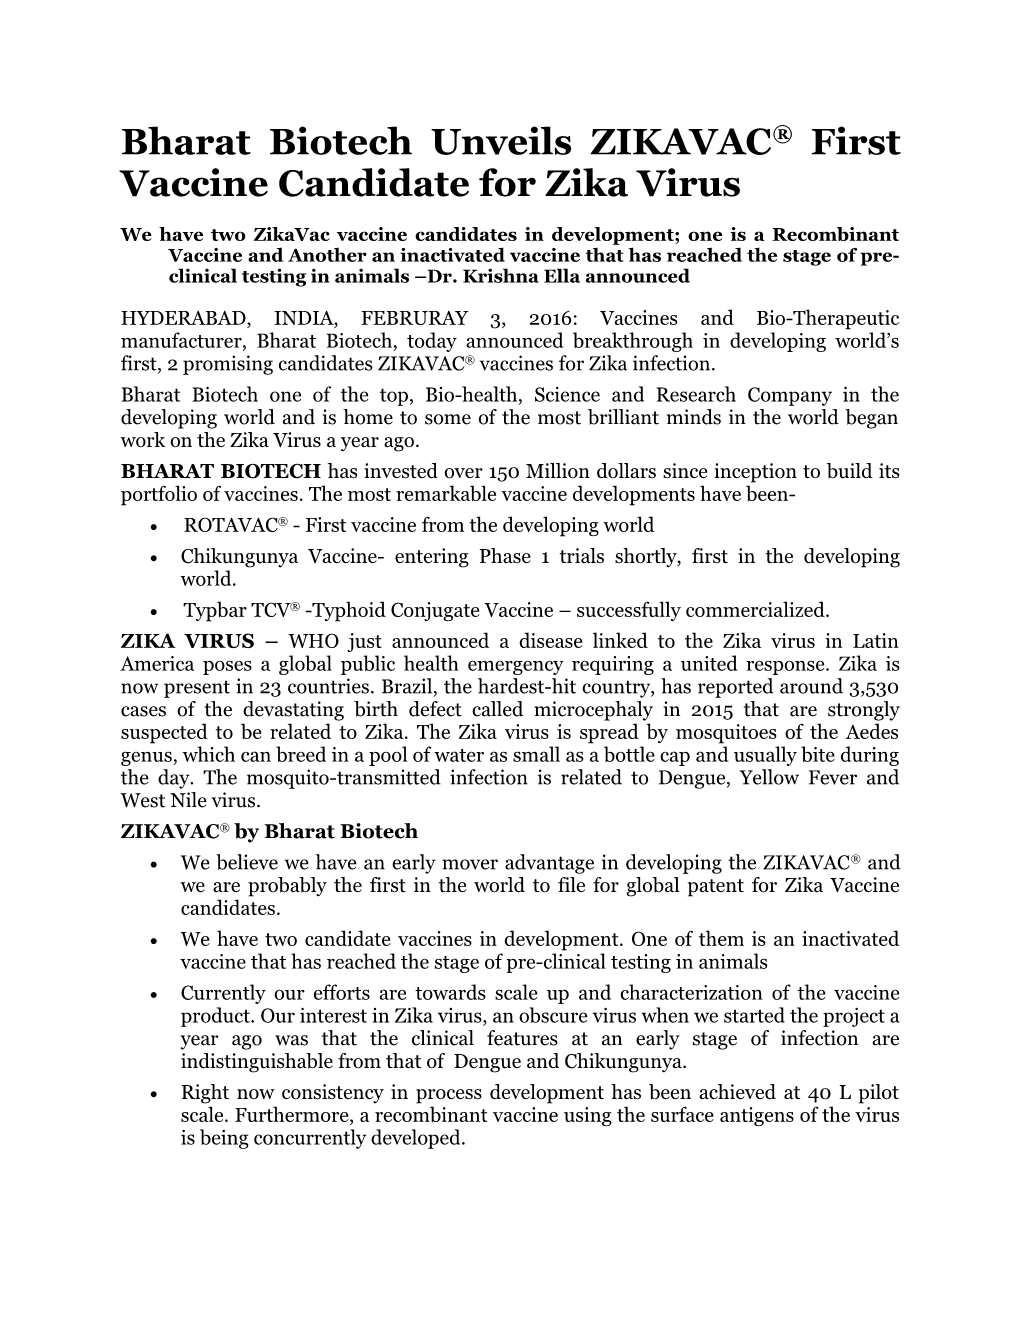 Bharat Biotech Unveils ZIKAVAC First Vaccine Candidate for Zika Virus